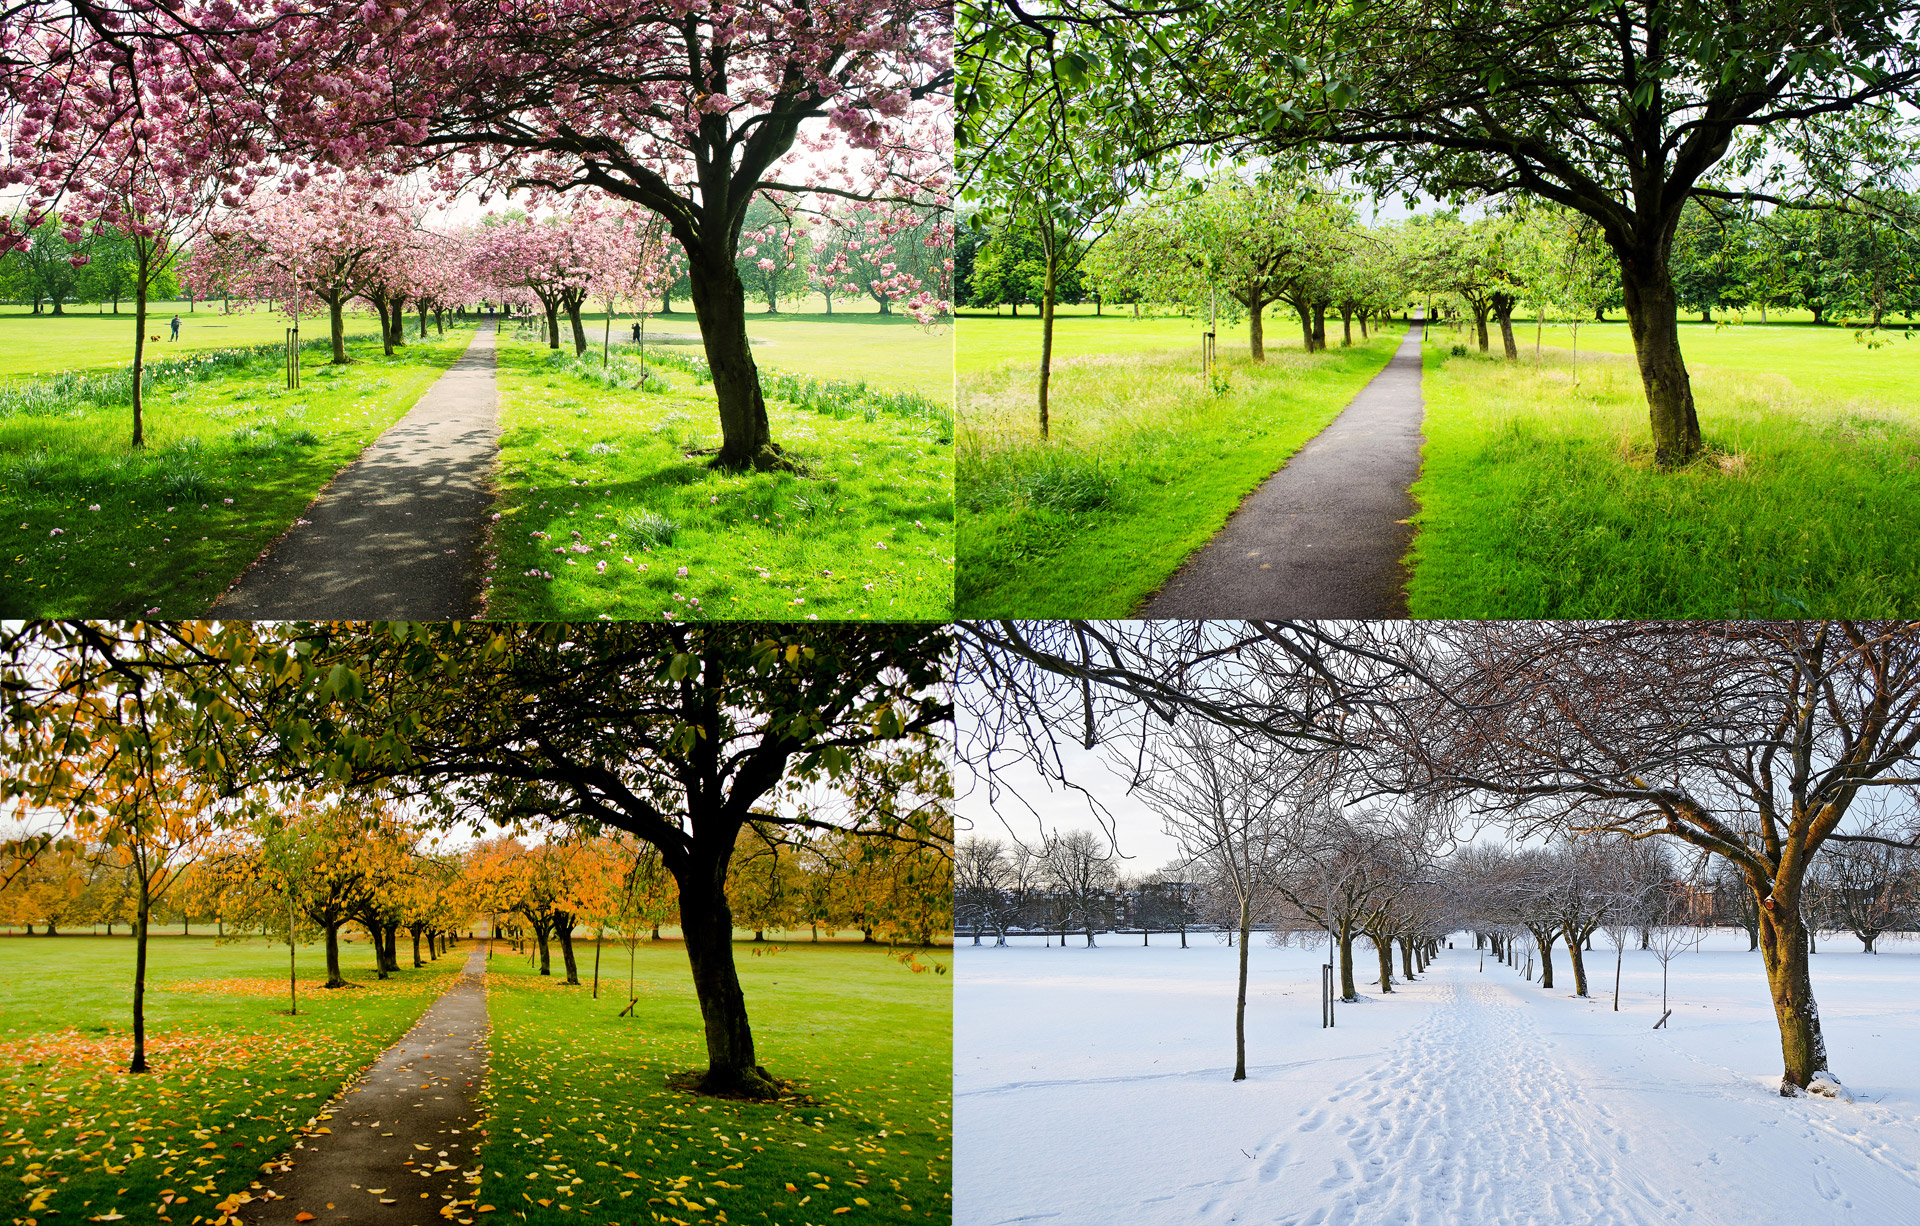 La imagen muestra cuatro fotografías de un mismo lugar, un prado con árboles. Cada foto representa ese lugar en una estación del año, en primavera, en verano, en otoño y en invierno